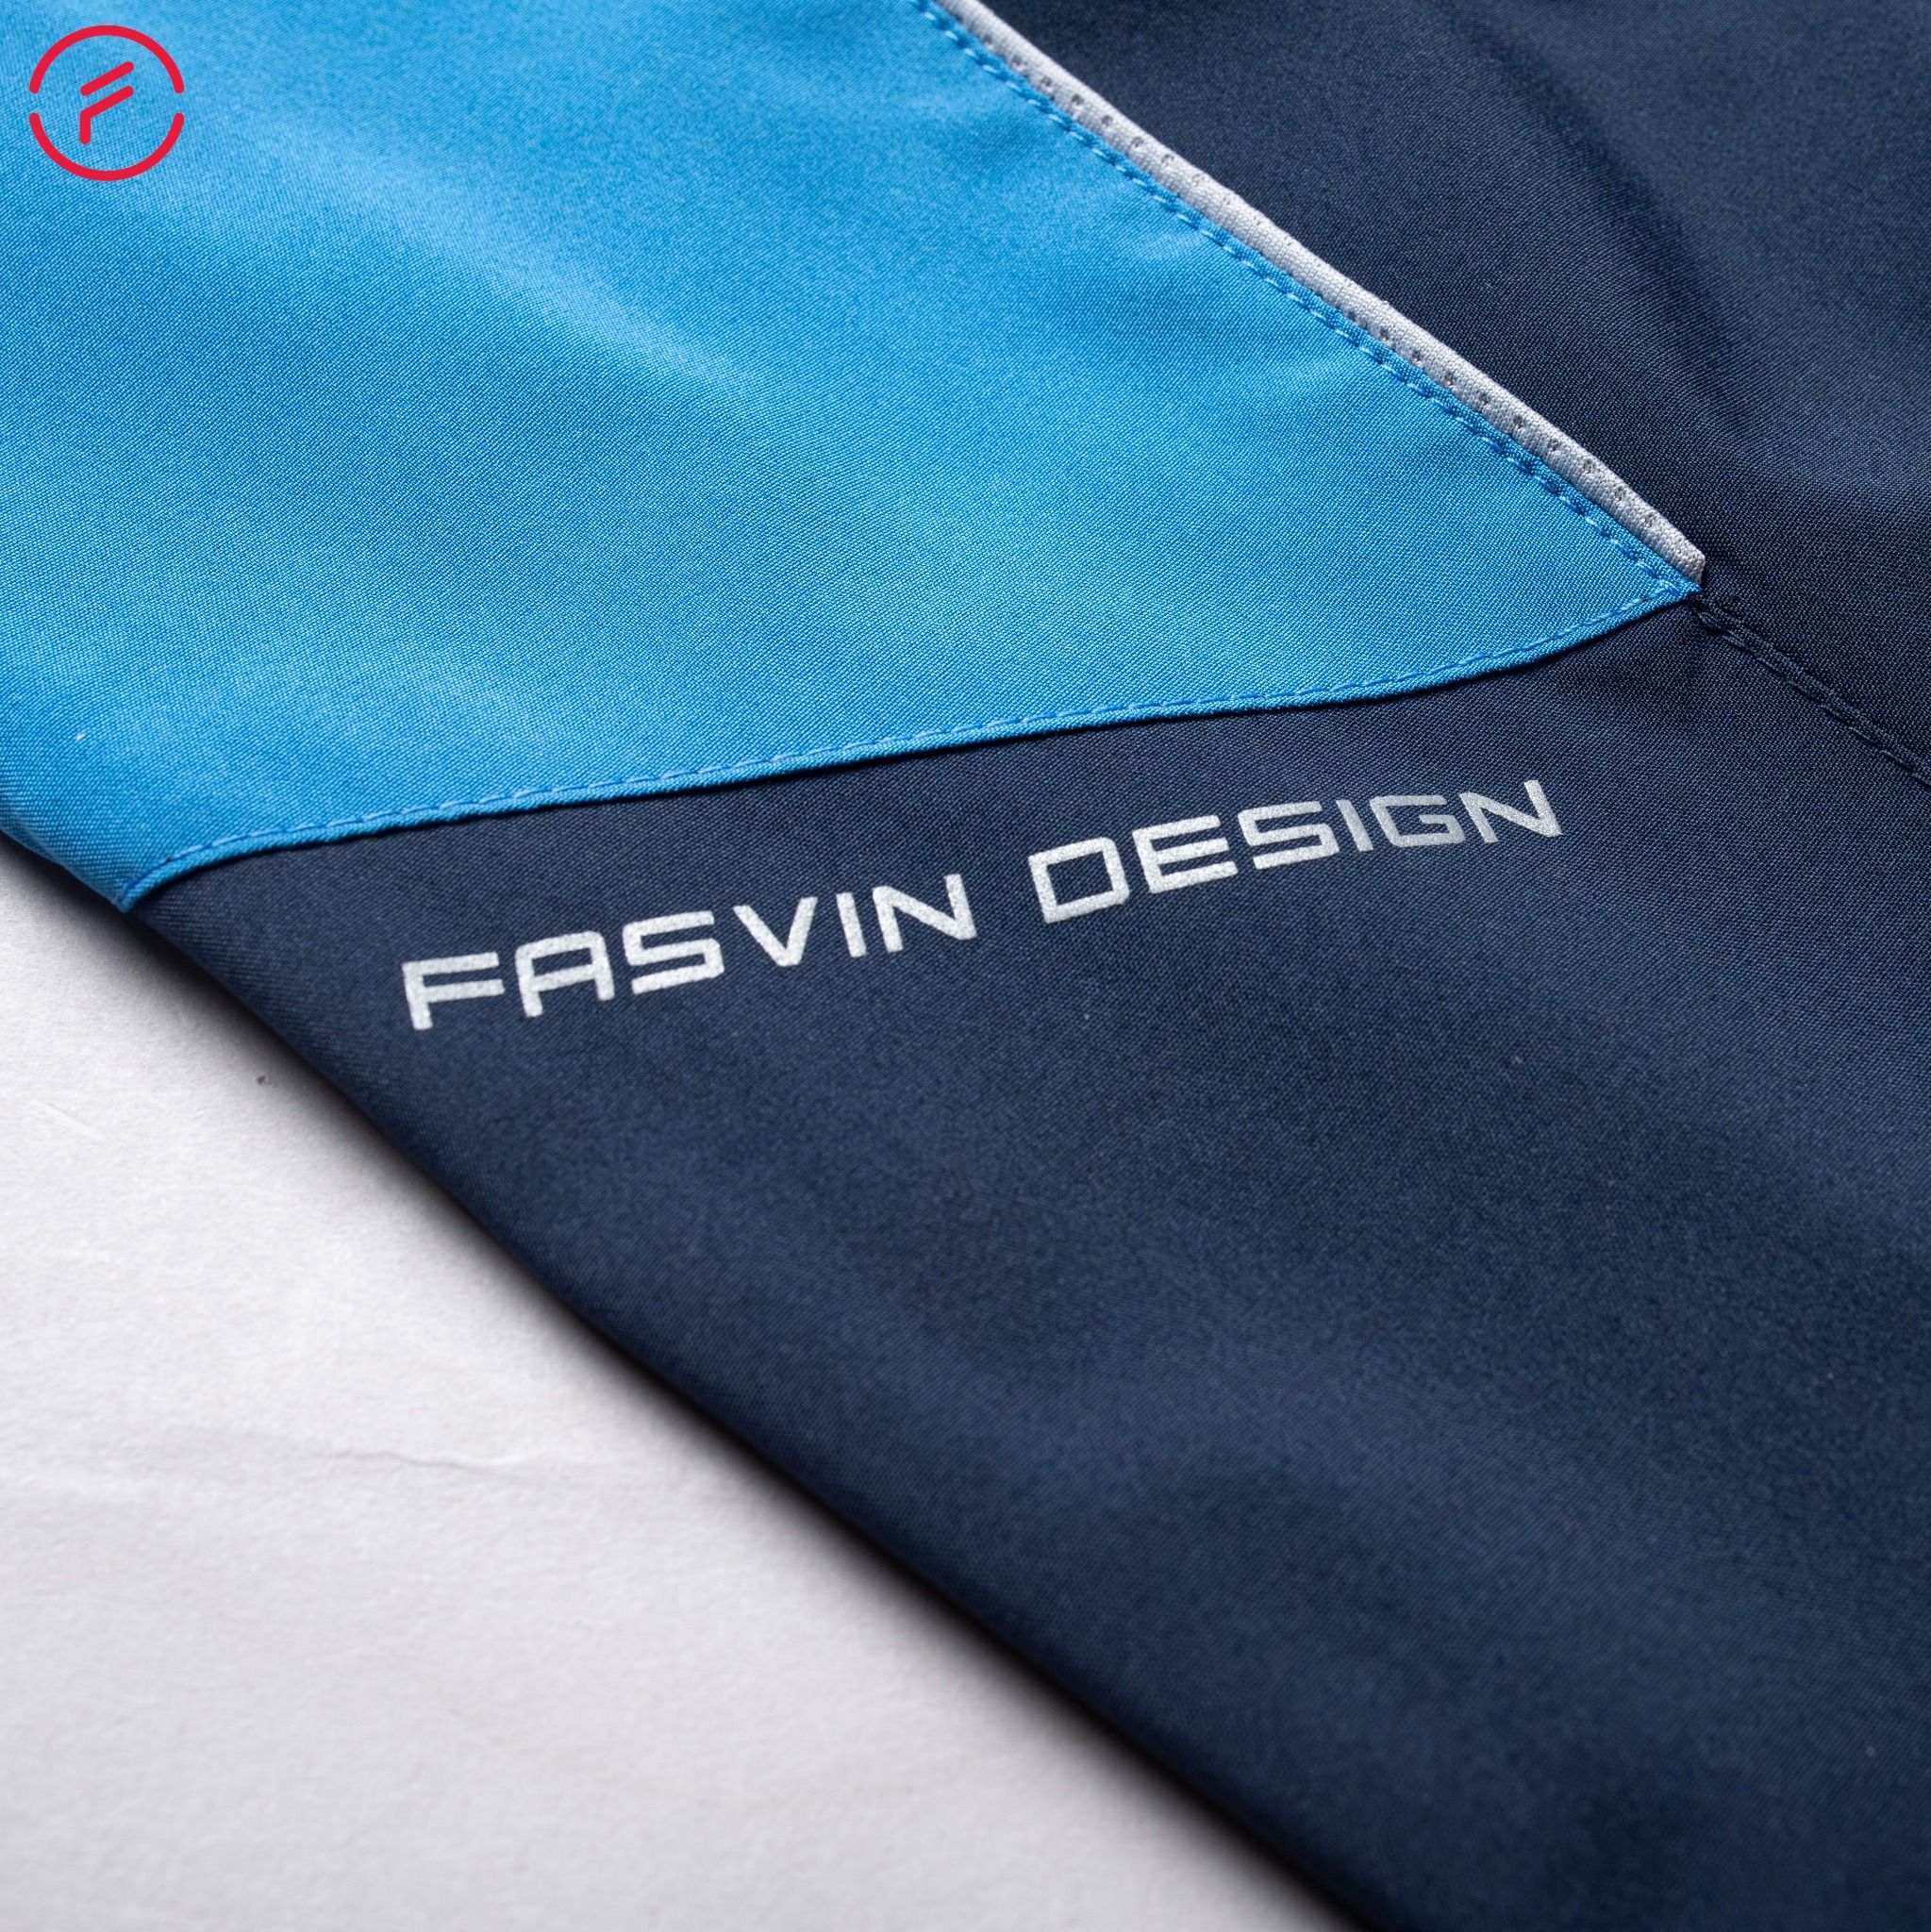  Bộ thể thao nam Fasvin chất vải gió chun 2 lớp co giãn mềm mại BC22542 